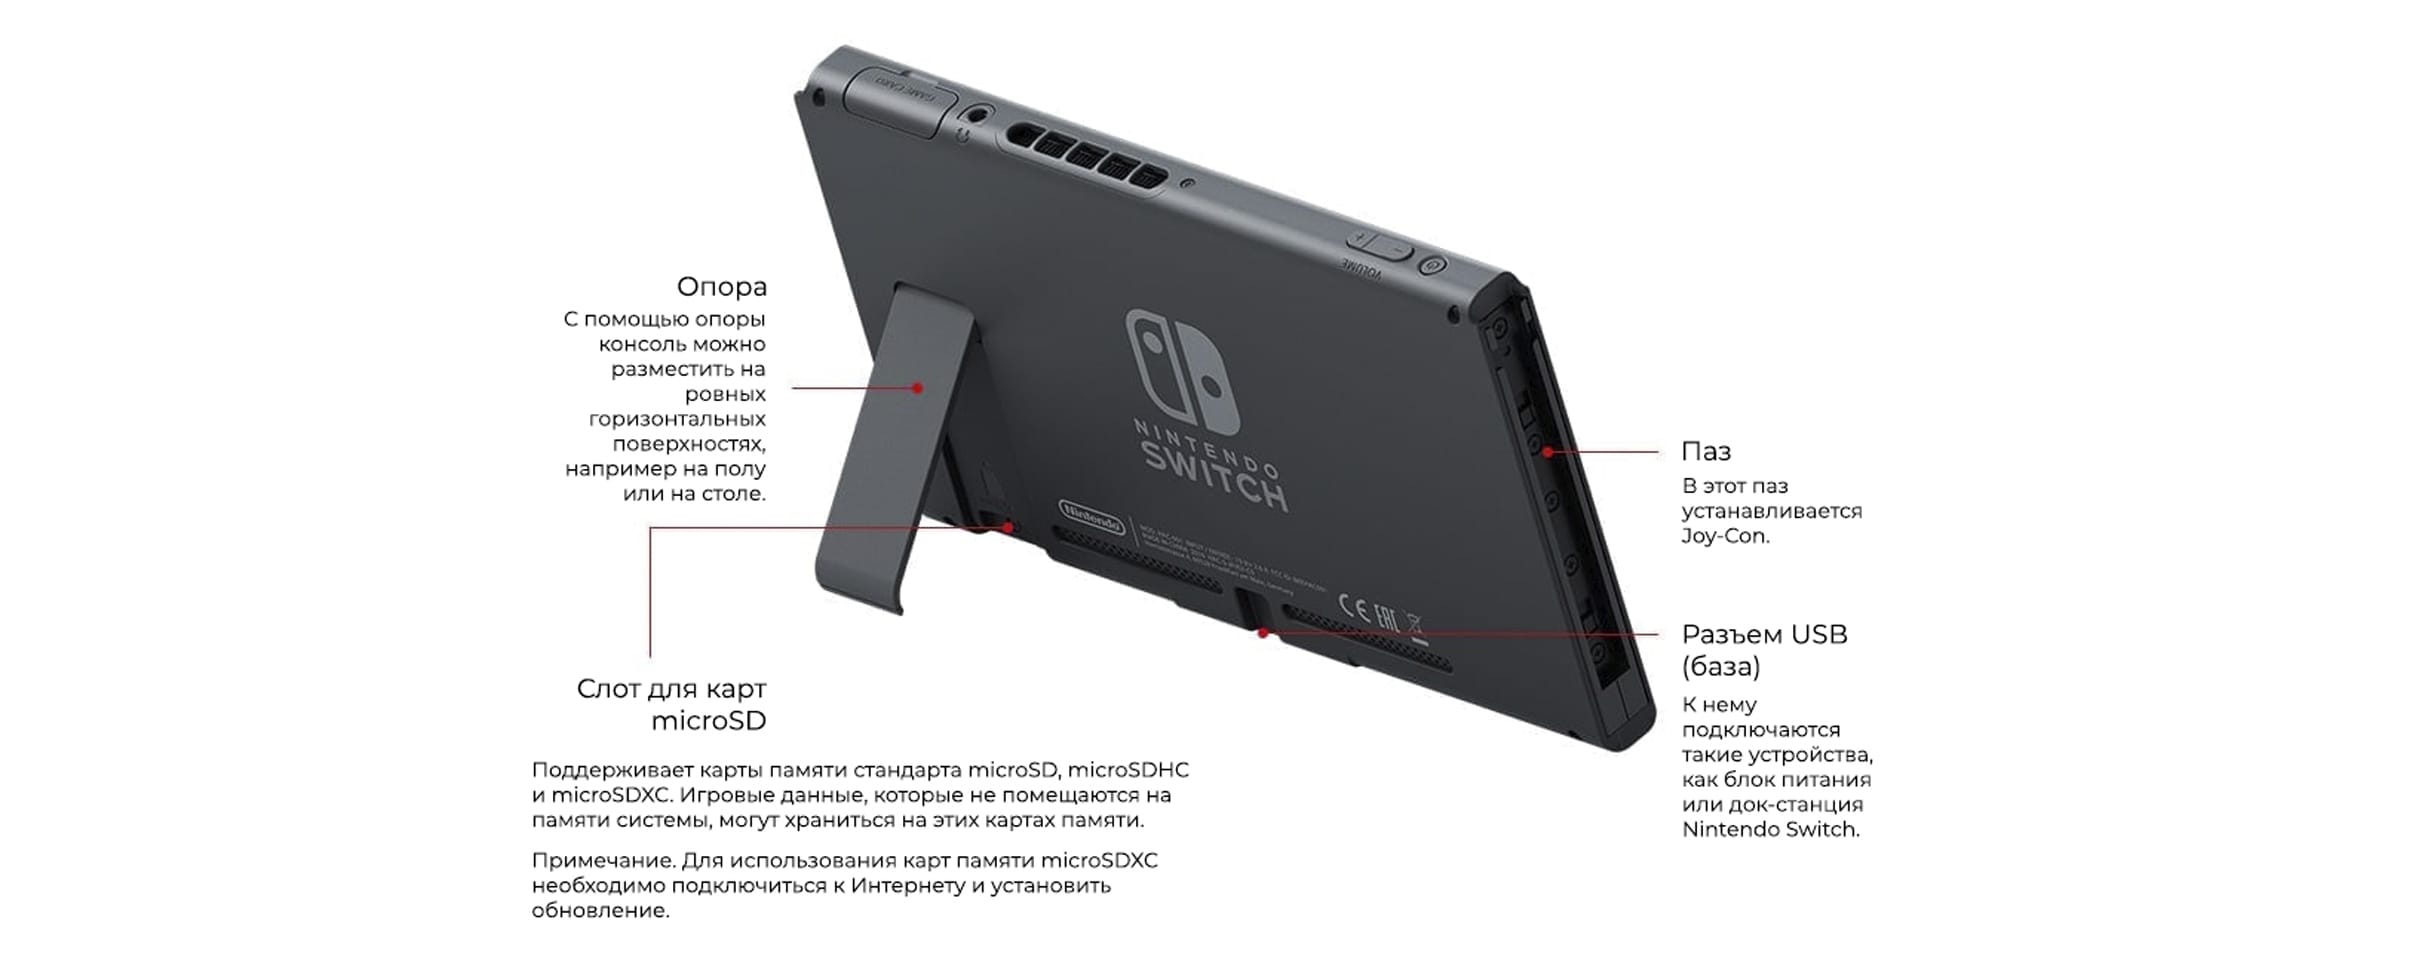 Nintendo Switch, вид сзади